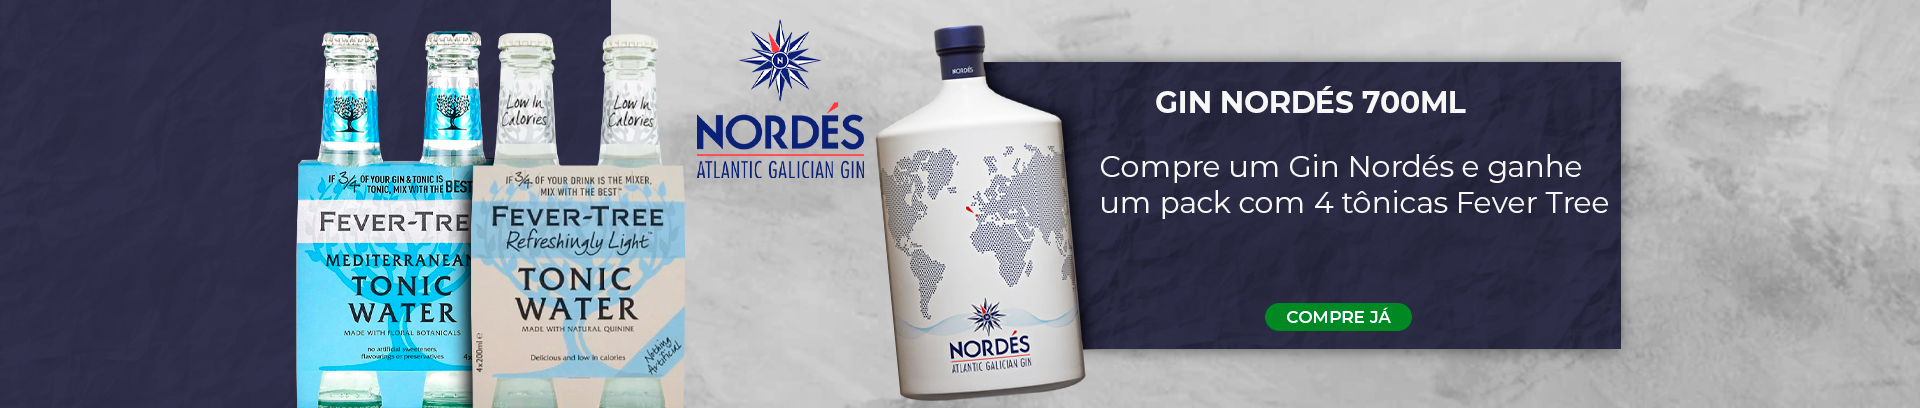 Desktop | Promoção Gin Nordes